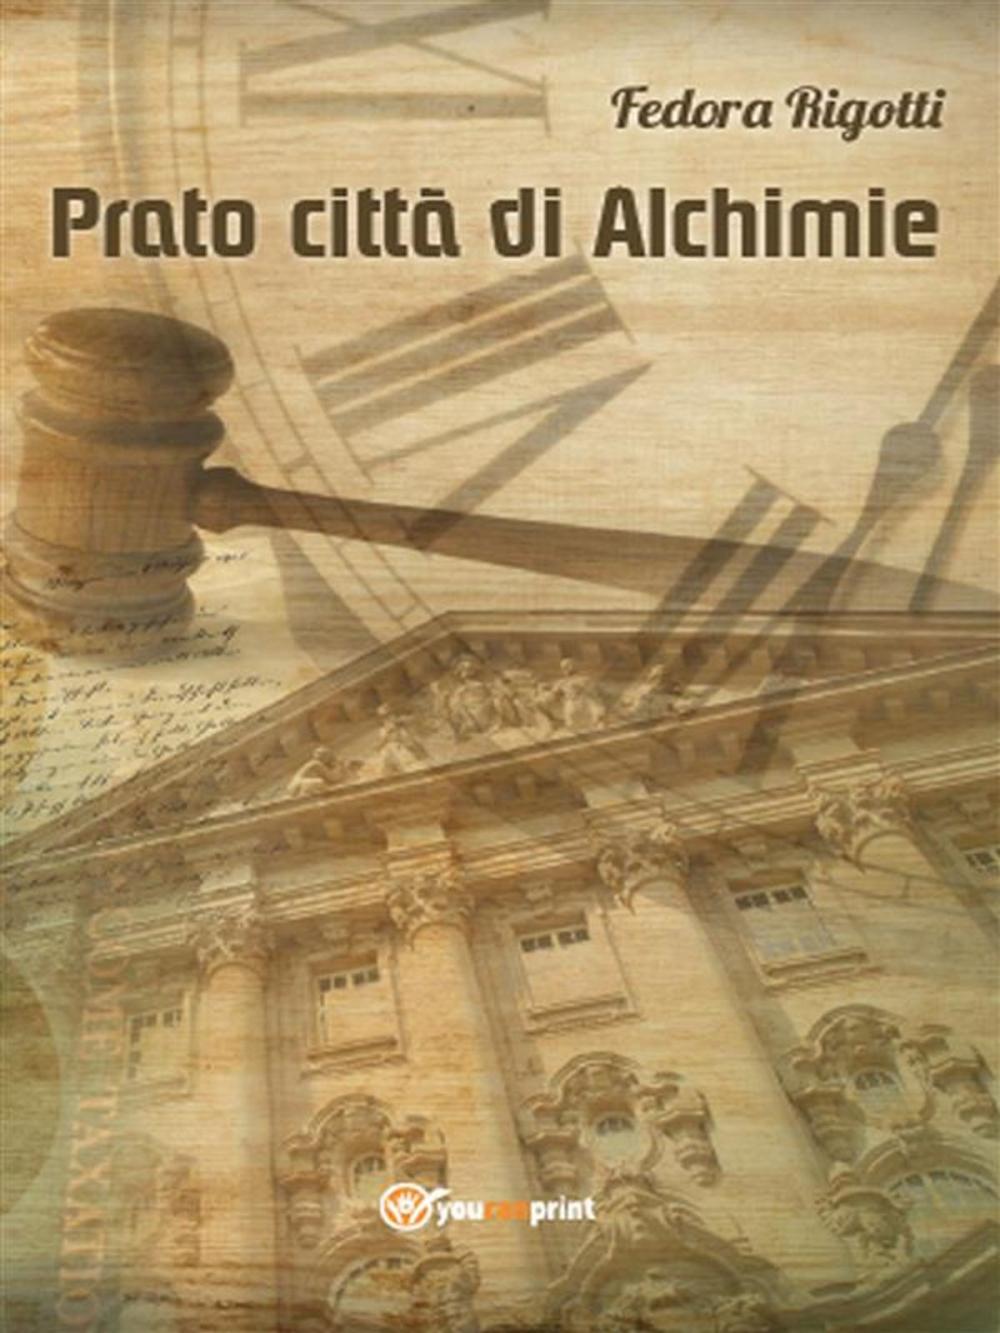 Big bigCover of Prato città di Alchimie